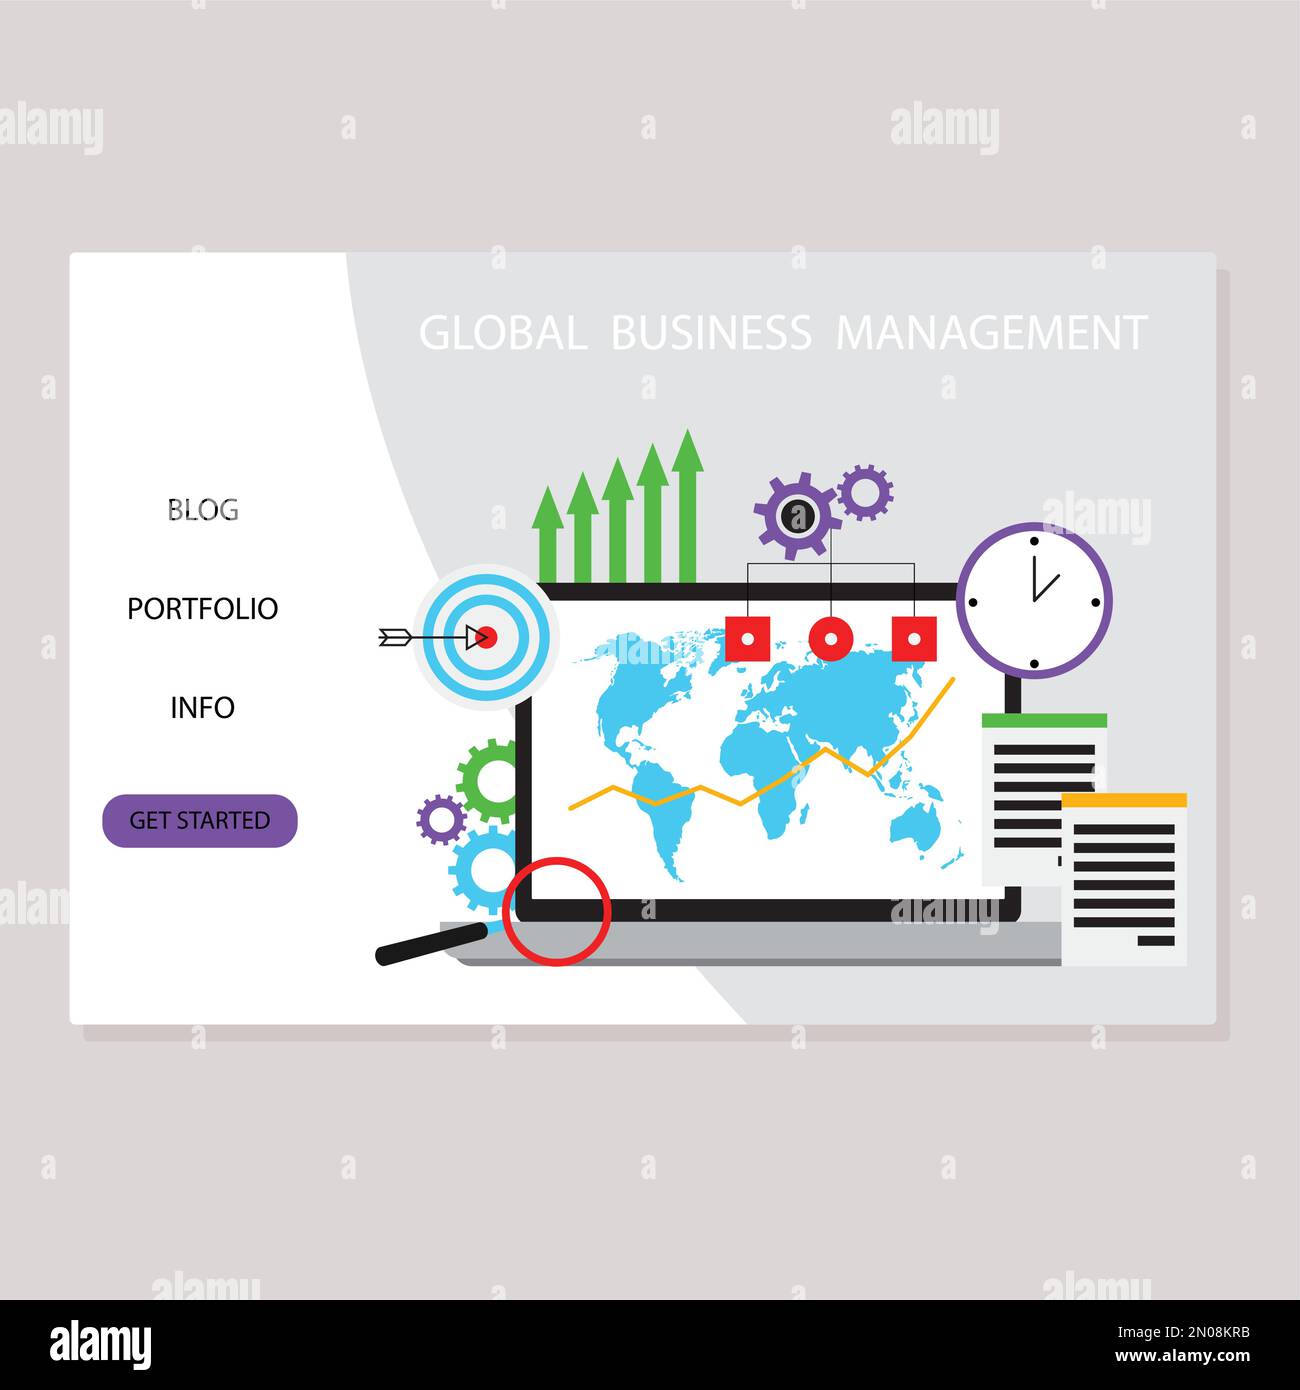 Landing-Page für Global Business Management, Verwaltungsgesellschaft. Vektor des Marketing-Website-Entwicklungsservice, Analyseprozess Remote Computer illus Stock Vektor